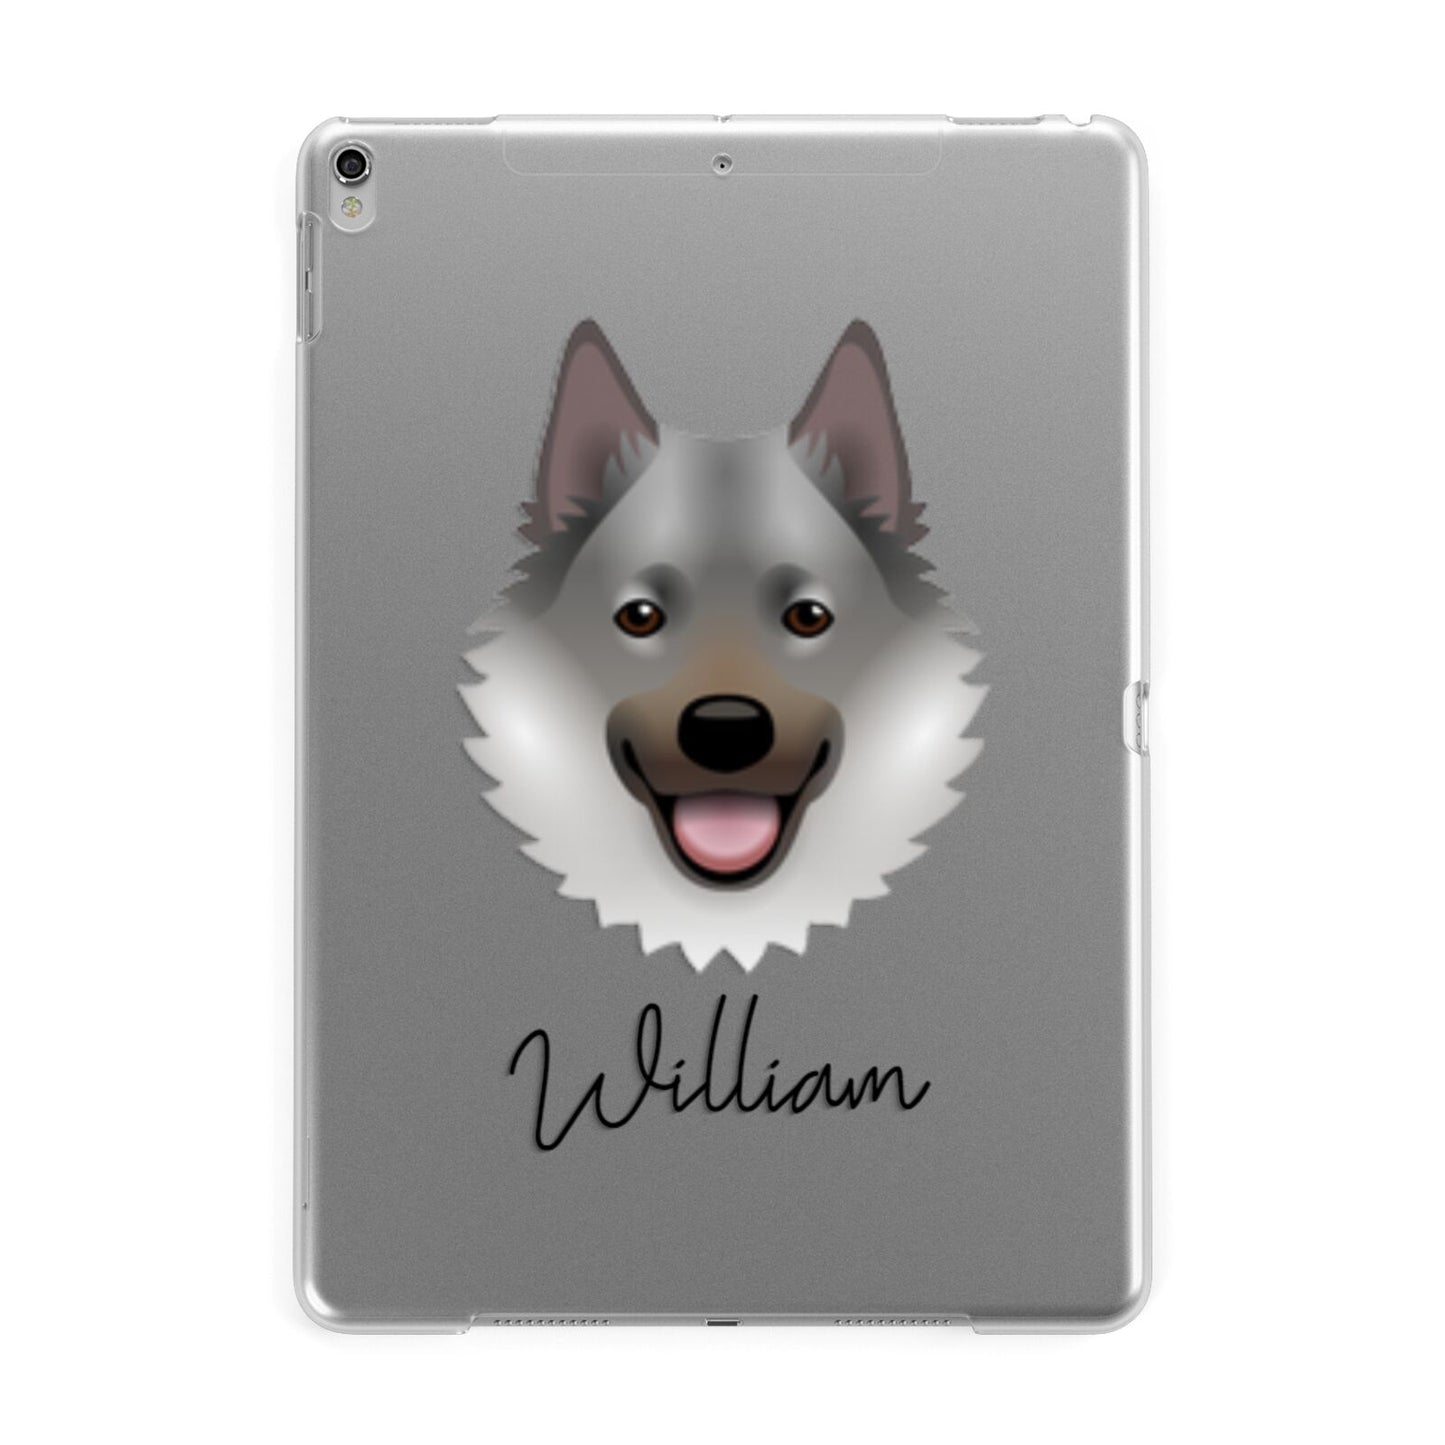 Norwegian Elkhound Personalised Apple iPad Silver Case